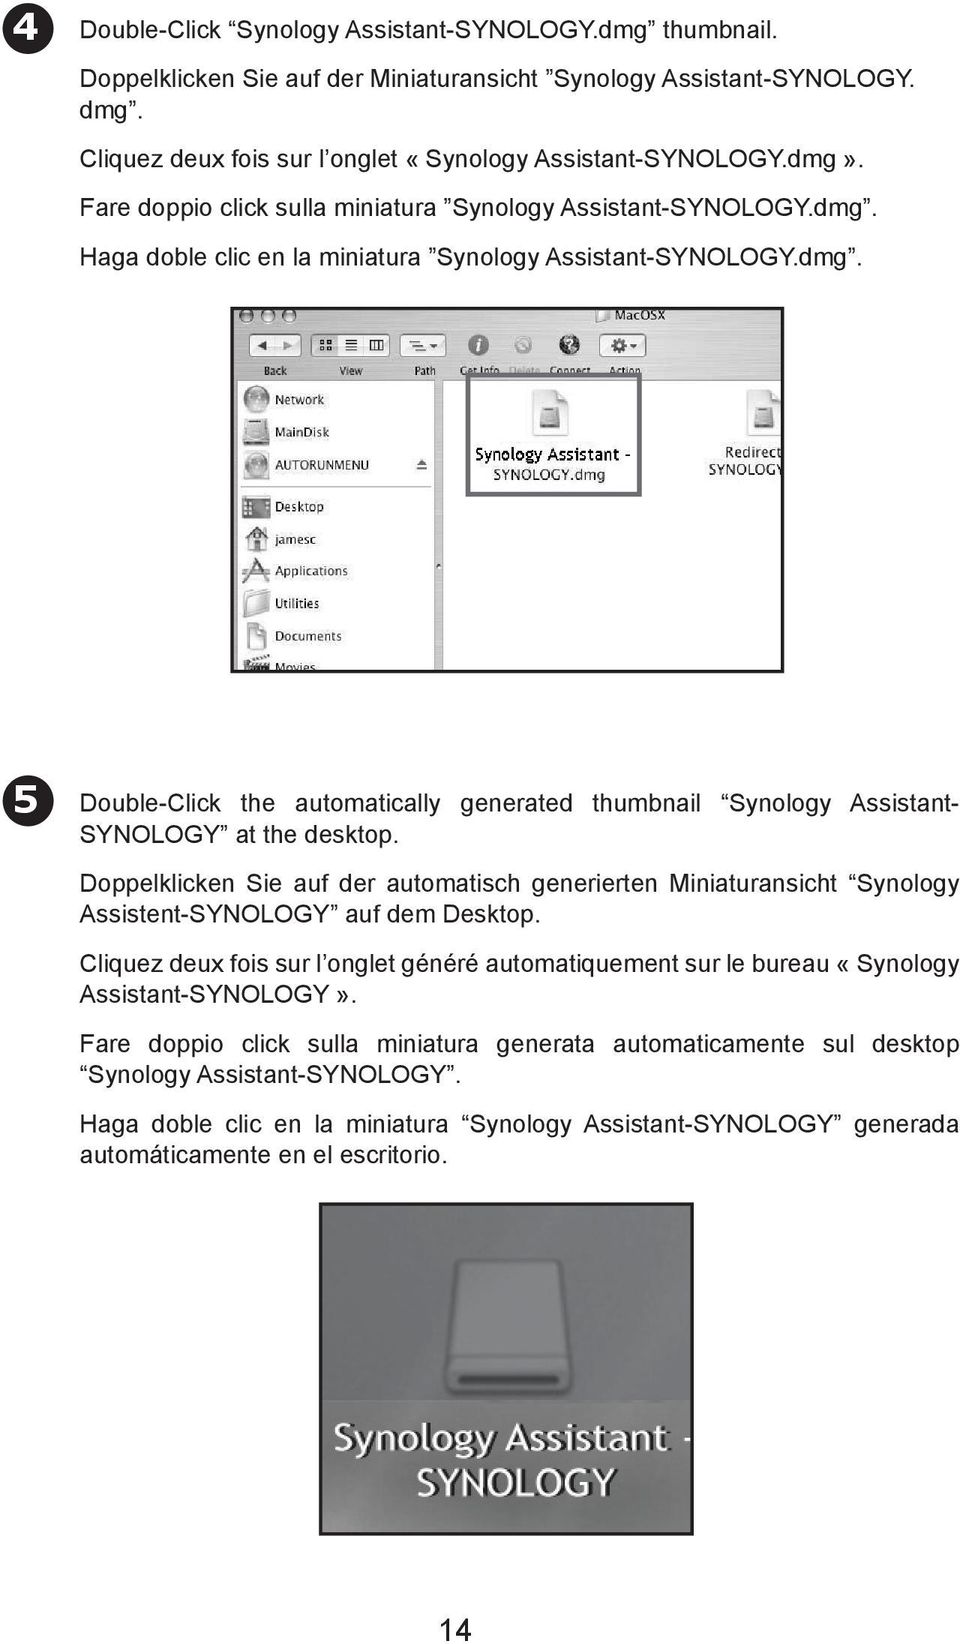 Doppelklicken Sie auf der automatisch generierten Miniaturansicht Synology Assistent-SYNOLOGY auf dem Desktop.